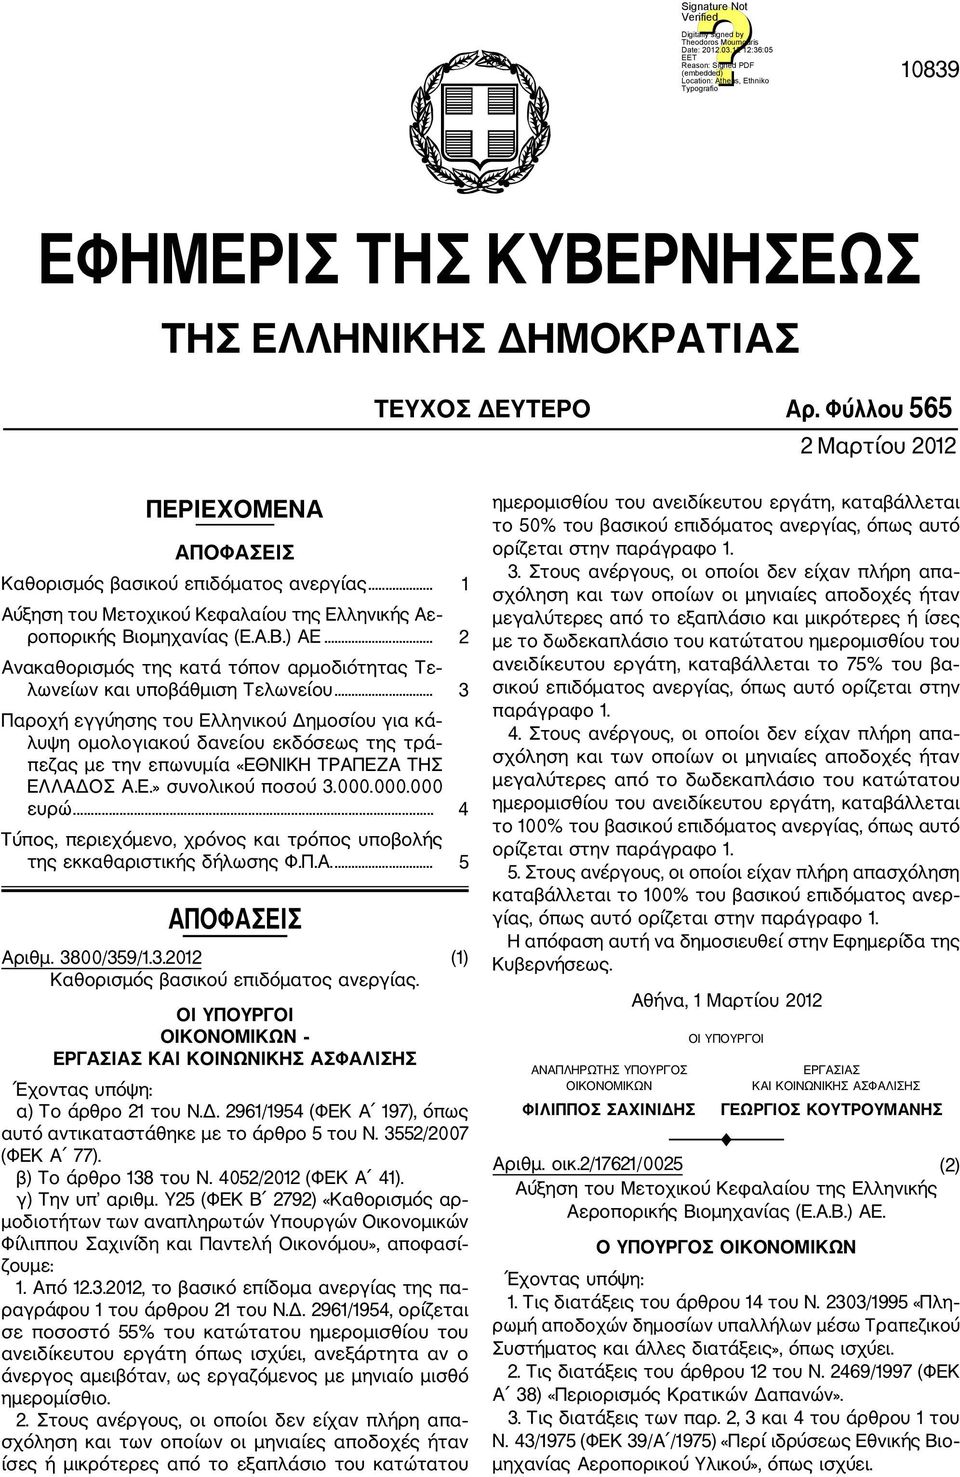 .. 3 Παροχή εγγύησης του Ελληνικού Δημοσίου για κά λυψη ομολογιακού δανείου εκδόσεως της τρά πεζας με την επωνυμία «ΕΘΝΙΚΗ ΤΡΑΠΕΖΑ ΤΗΣ ΕΛΛΑΔΟΣ Α.Ε.» συνολικού ποσού 3.000.000.000 ευρώ.